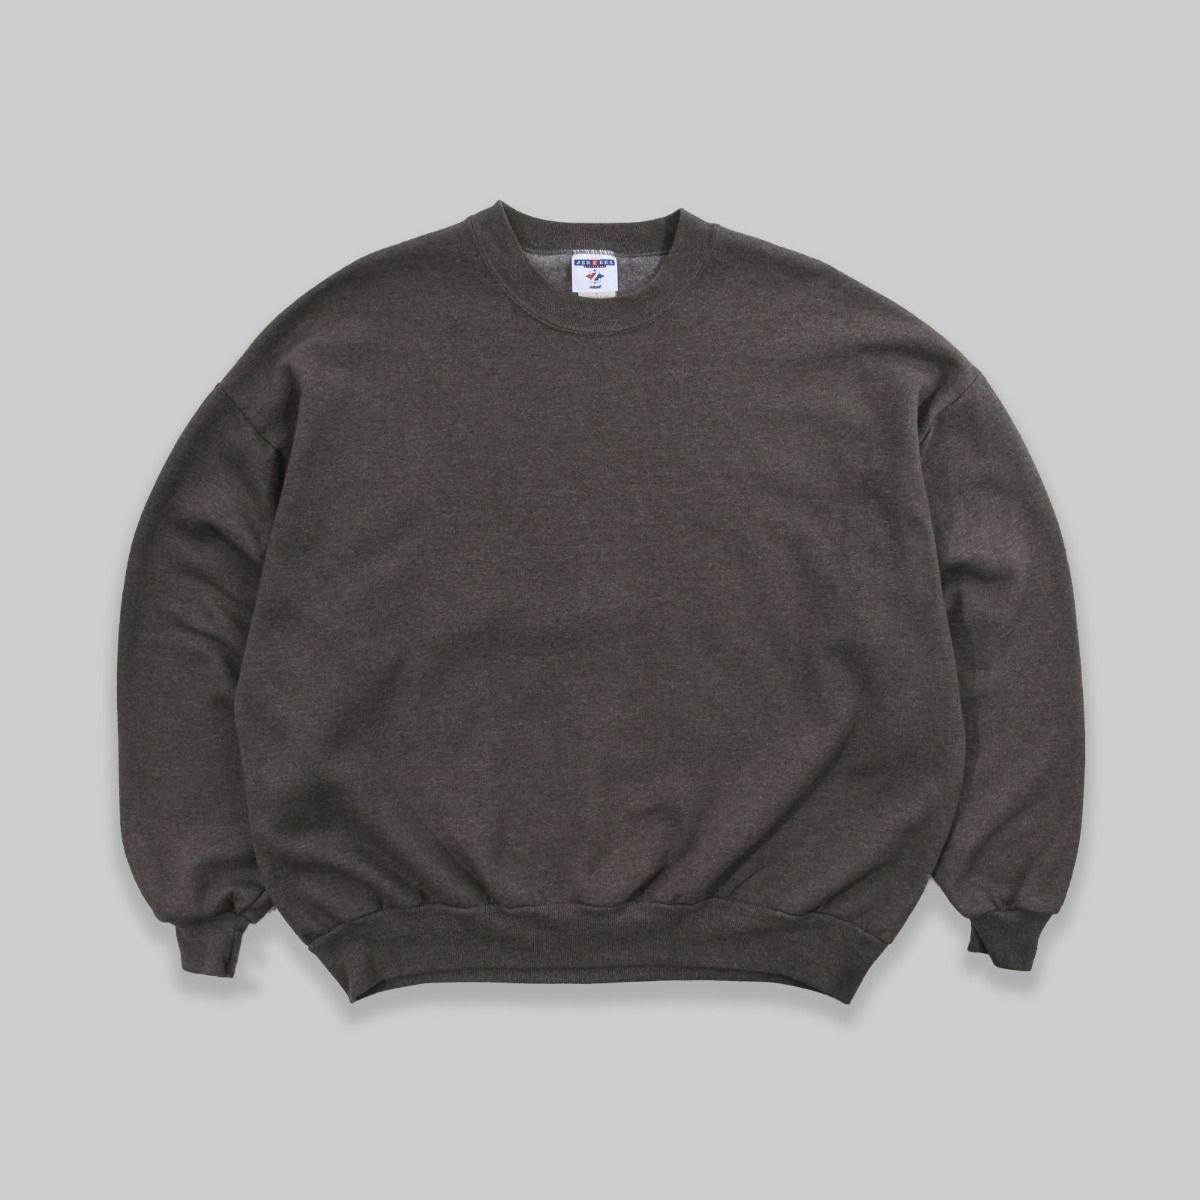 Jerzees Late 1990s Blank Brown Sweatshirt